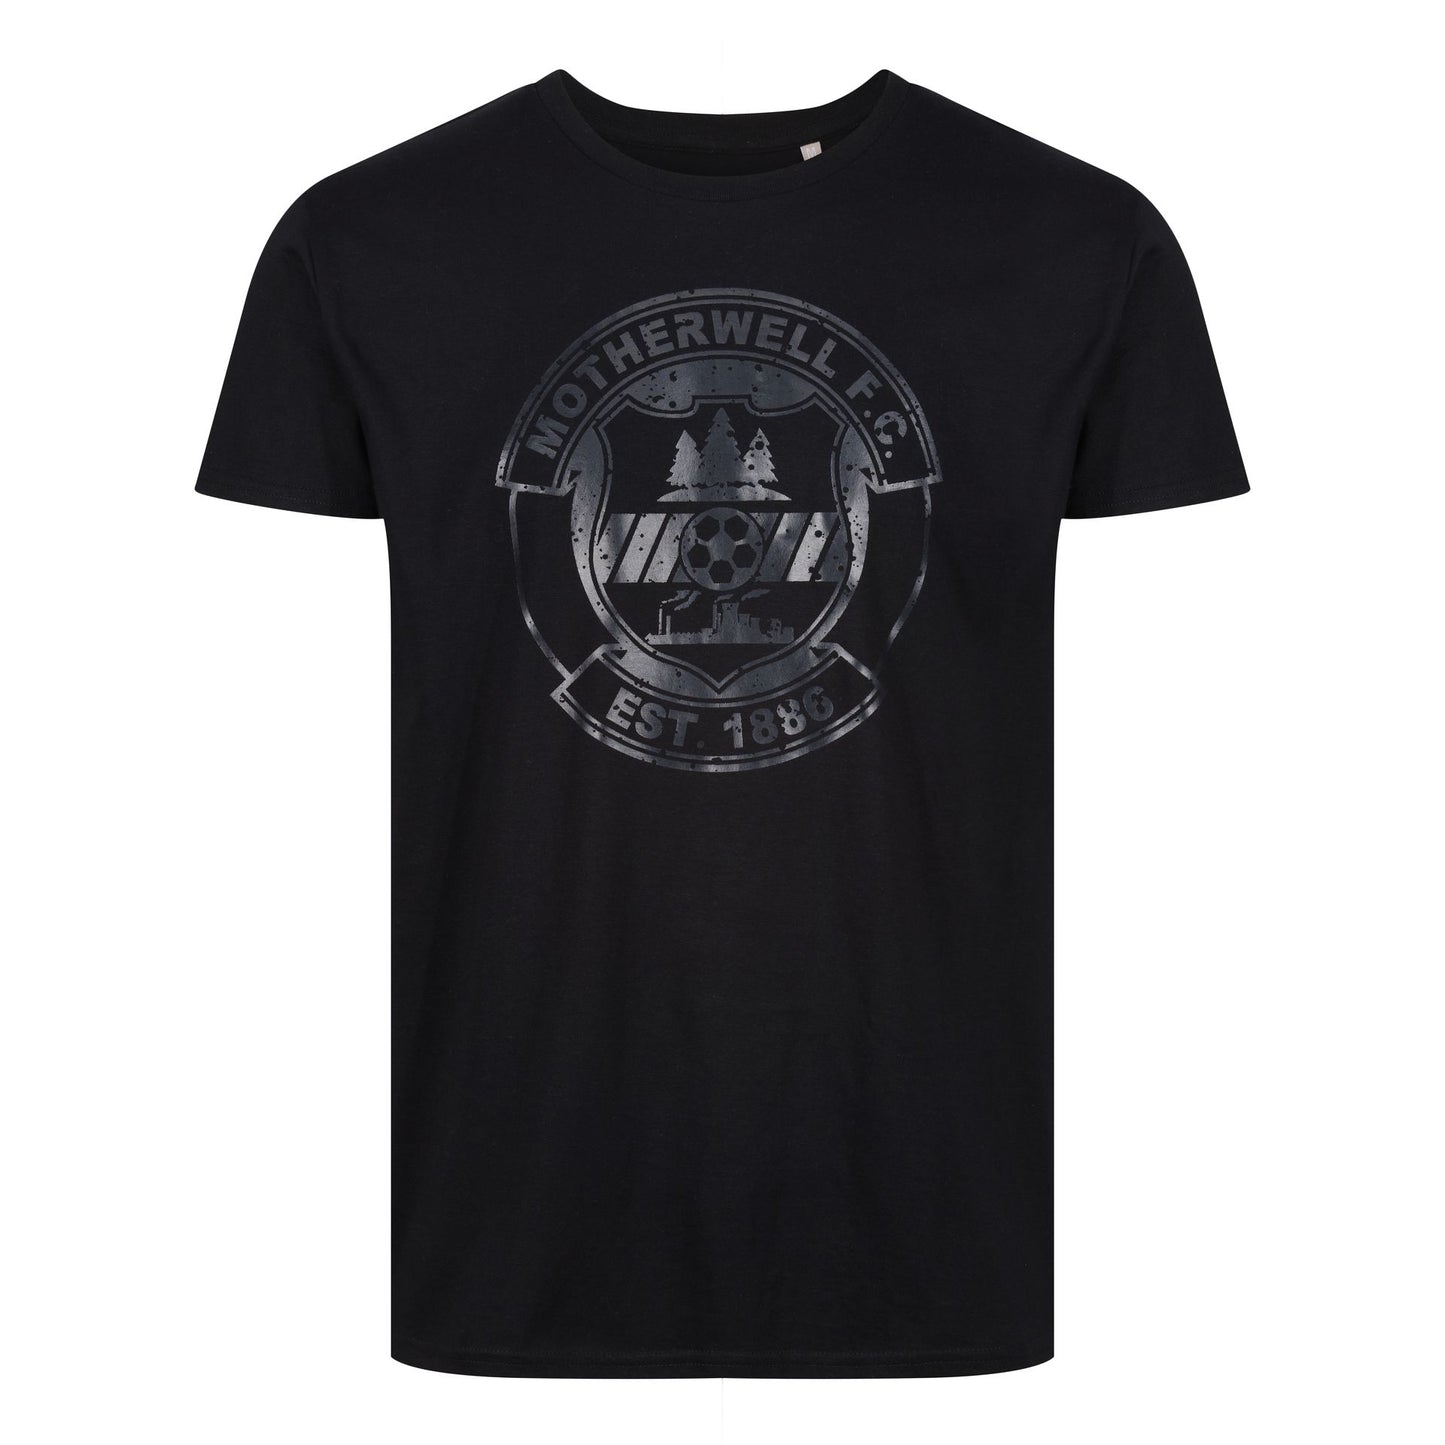 Jnr MFC Large Crest Blackout T-Shirt